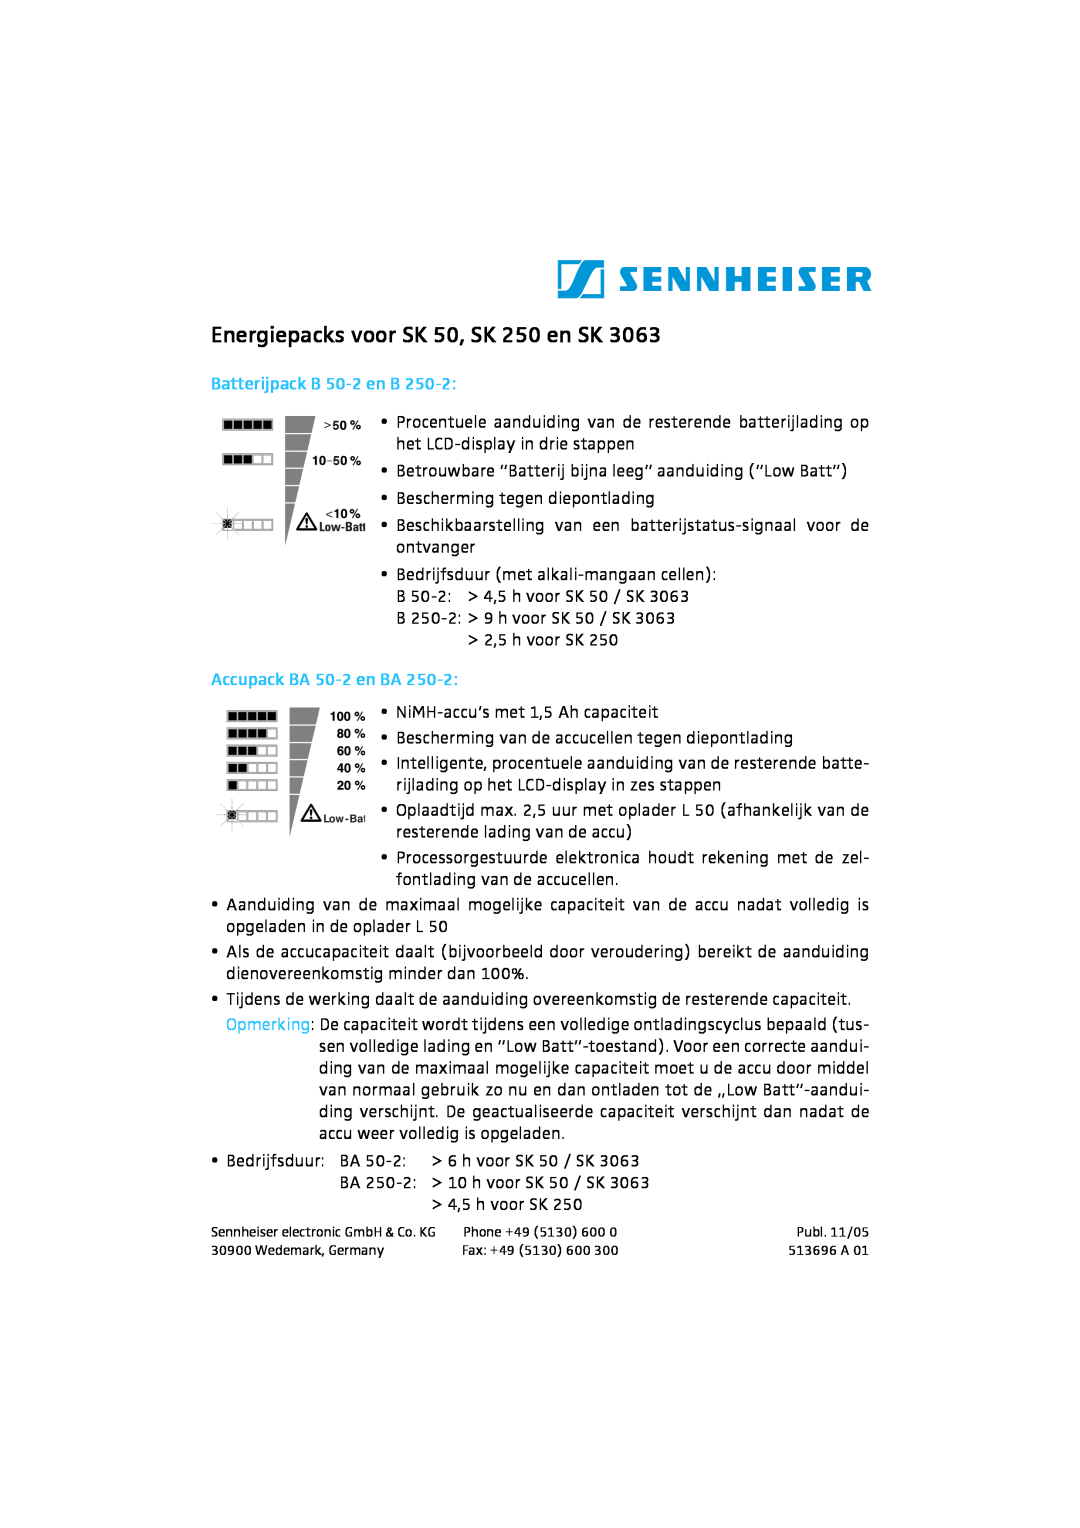 Sennheiser SK 3063 manual Energiepacks voor SK 50, SK 250 en SK, Batterijpack B 50-2en B, Accupack BA 50-2en BA 